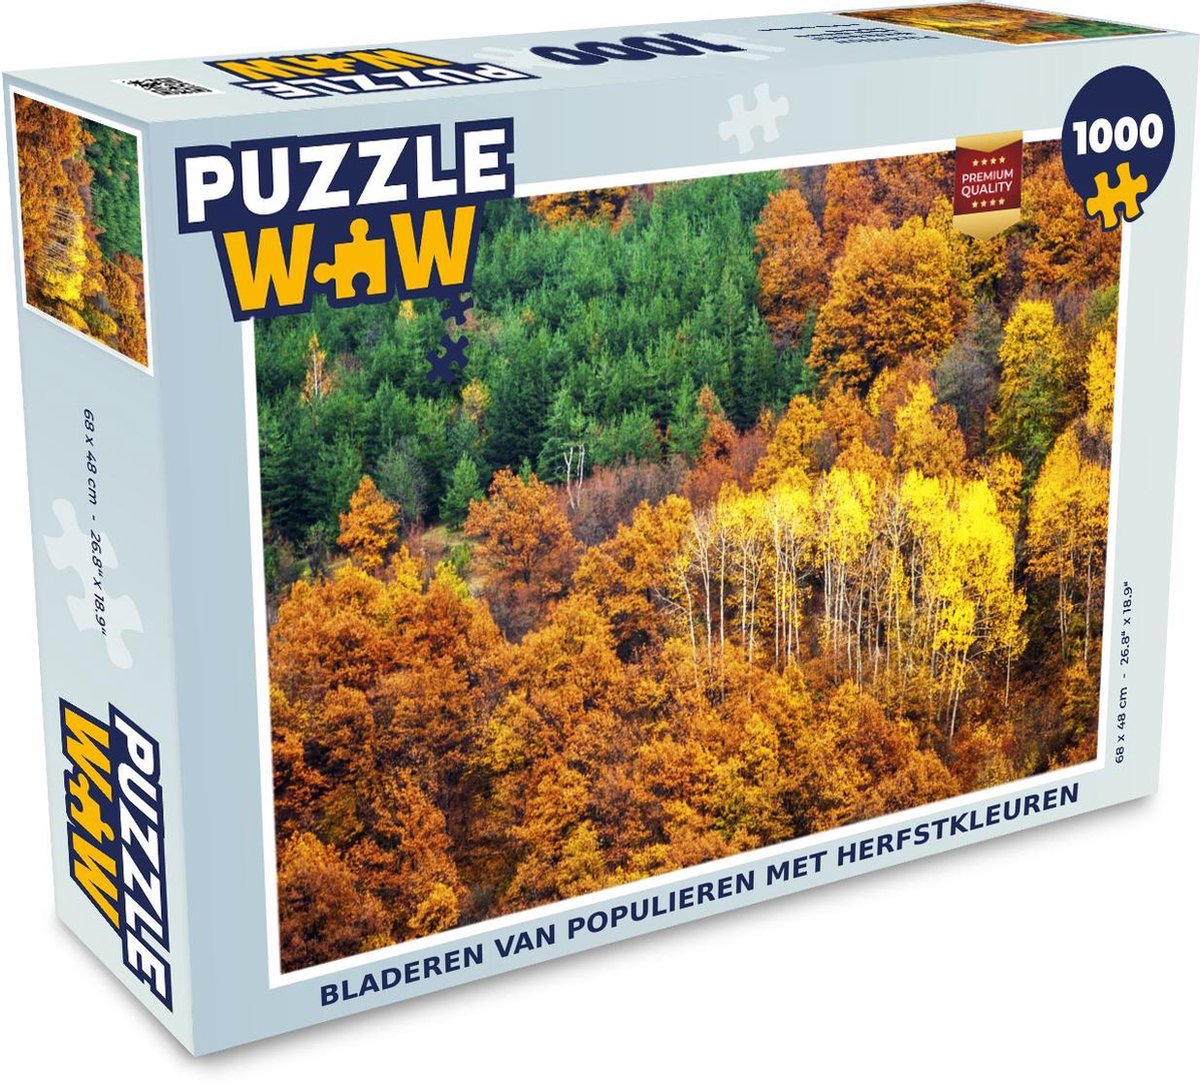 Afbeelding van product Puzzel 1000 stukjes volwassenen Populieren 1000 stukjes - Bladeren van populieren met herfstkleuren - PuzzleWow heeft +100000 puzzels